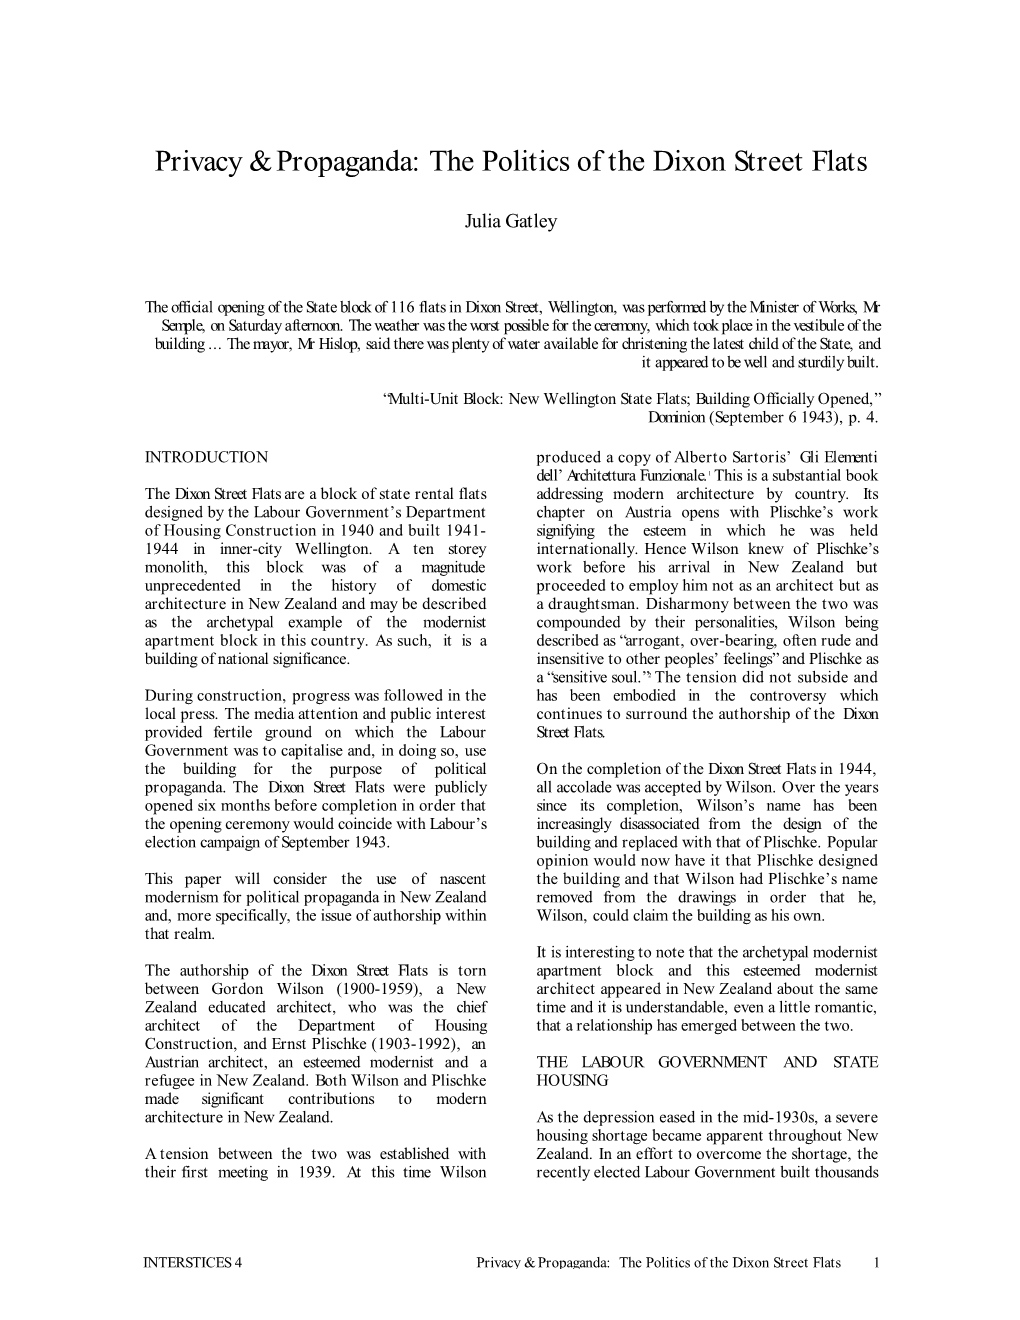 Privacy and Propaganda